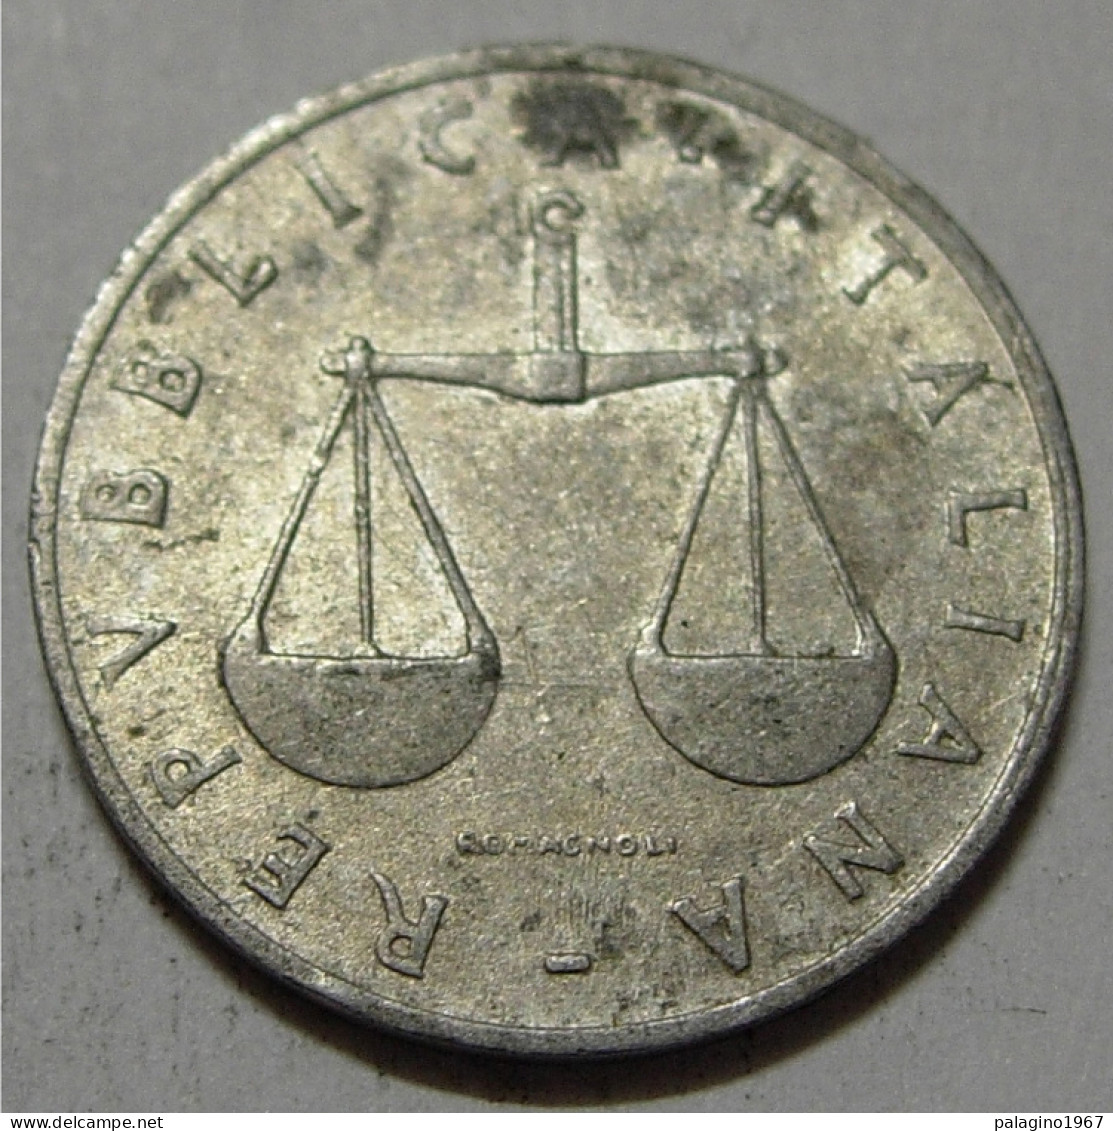 REPUBBLICA ITALIANA 1 Lira Cornucopia 1954 QBB  - 1 Lira